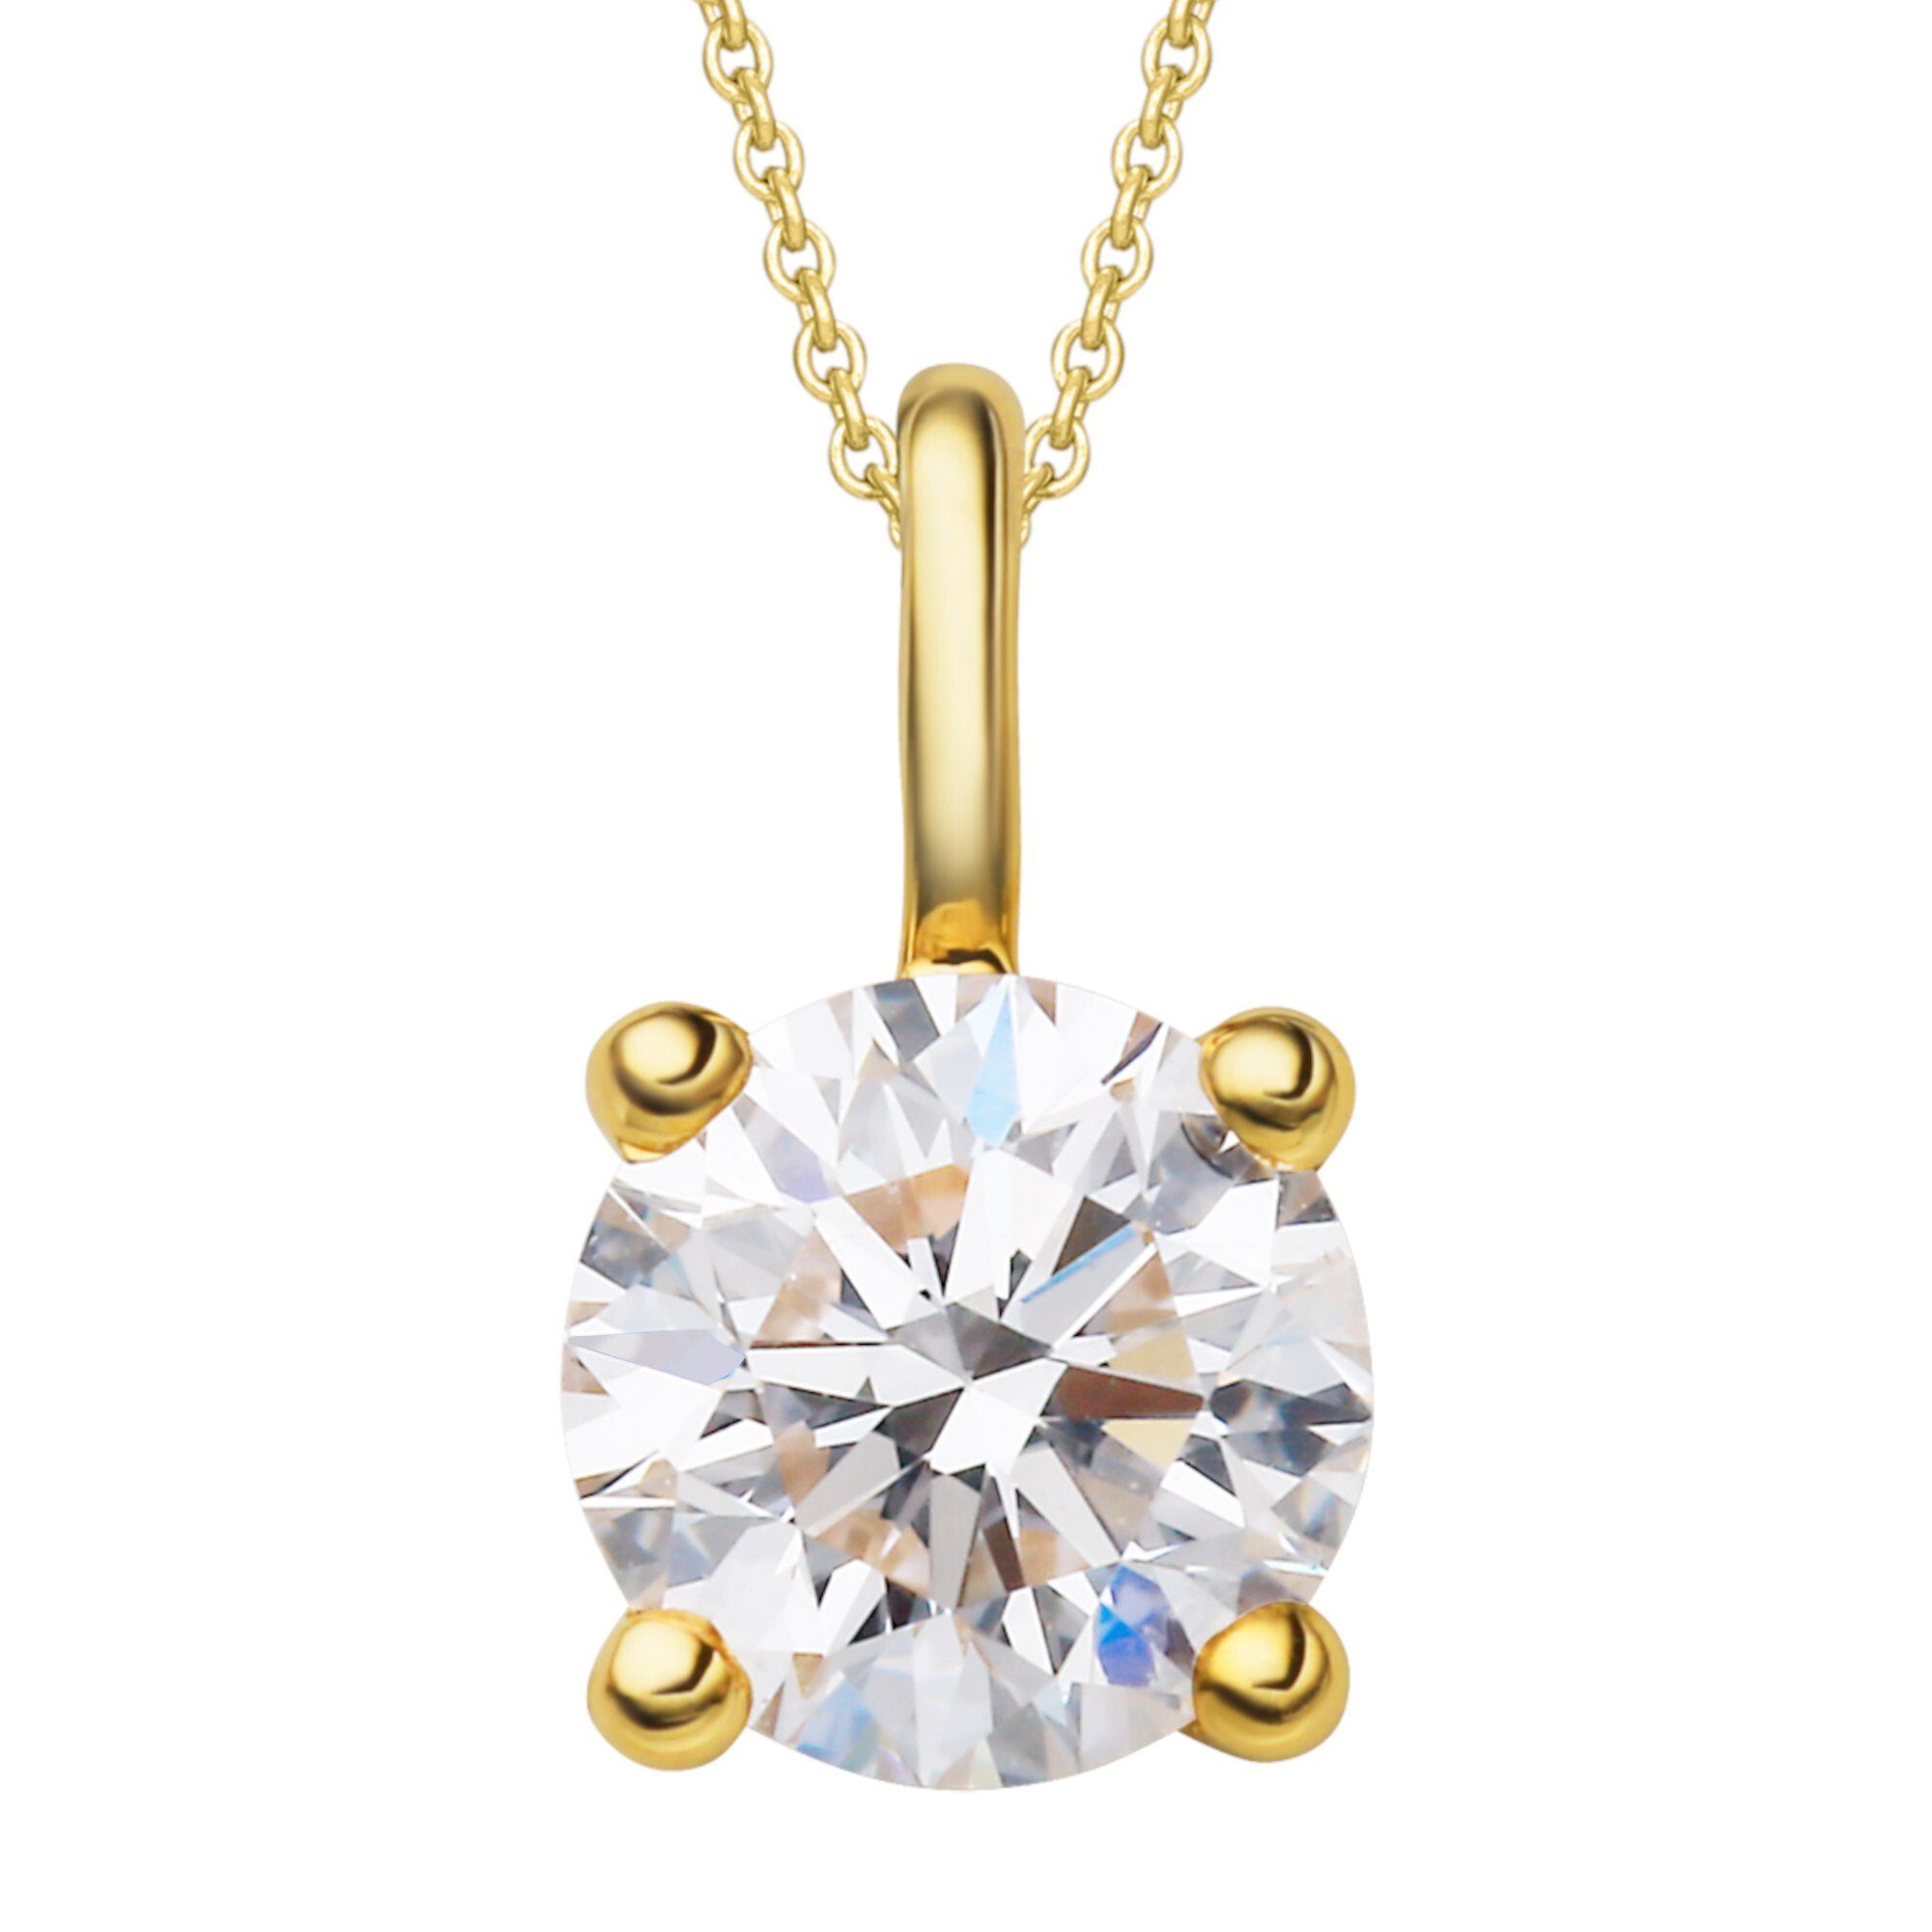 ONE ELEMENT Kettenanhänger 0.3 ct Diamant Brillant Anhänger aus 750 Gelbgold, Damen Gold Schmuck | Kettenanhänger